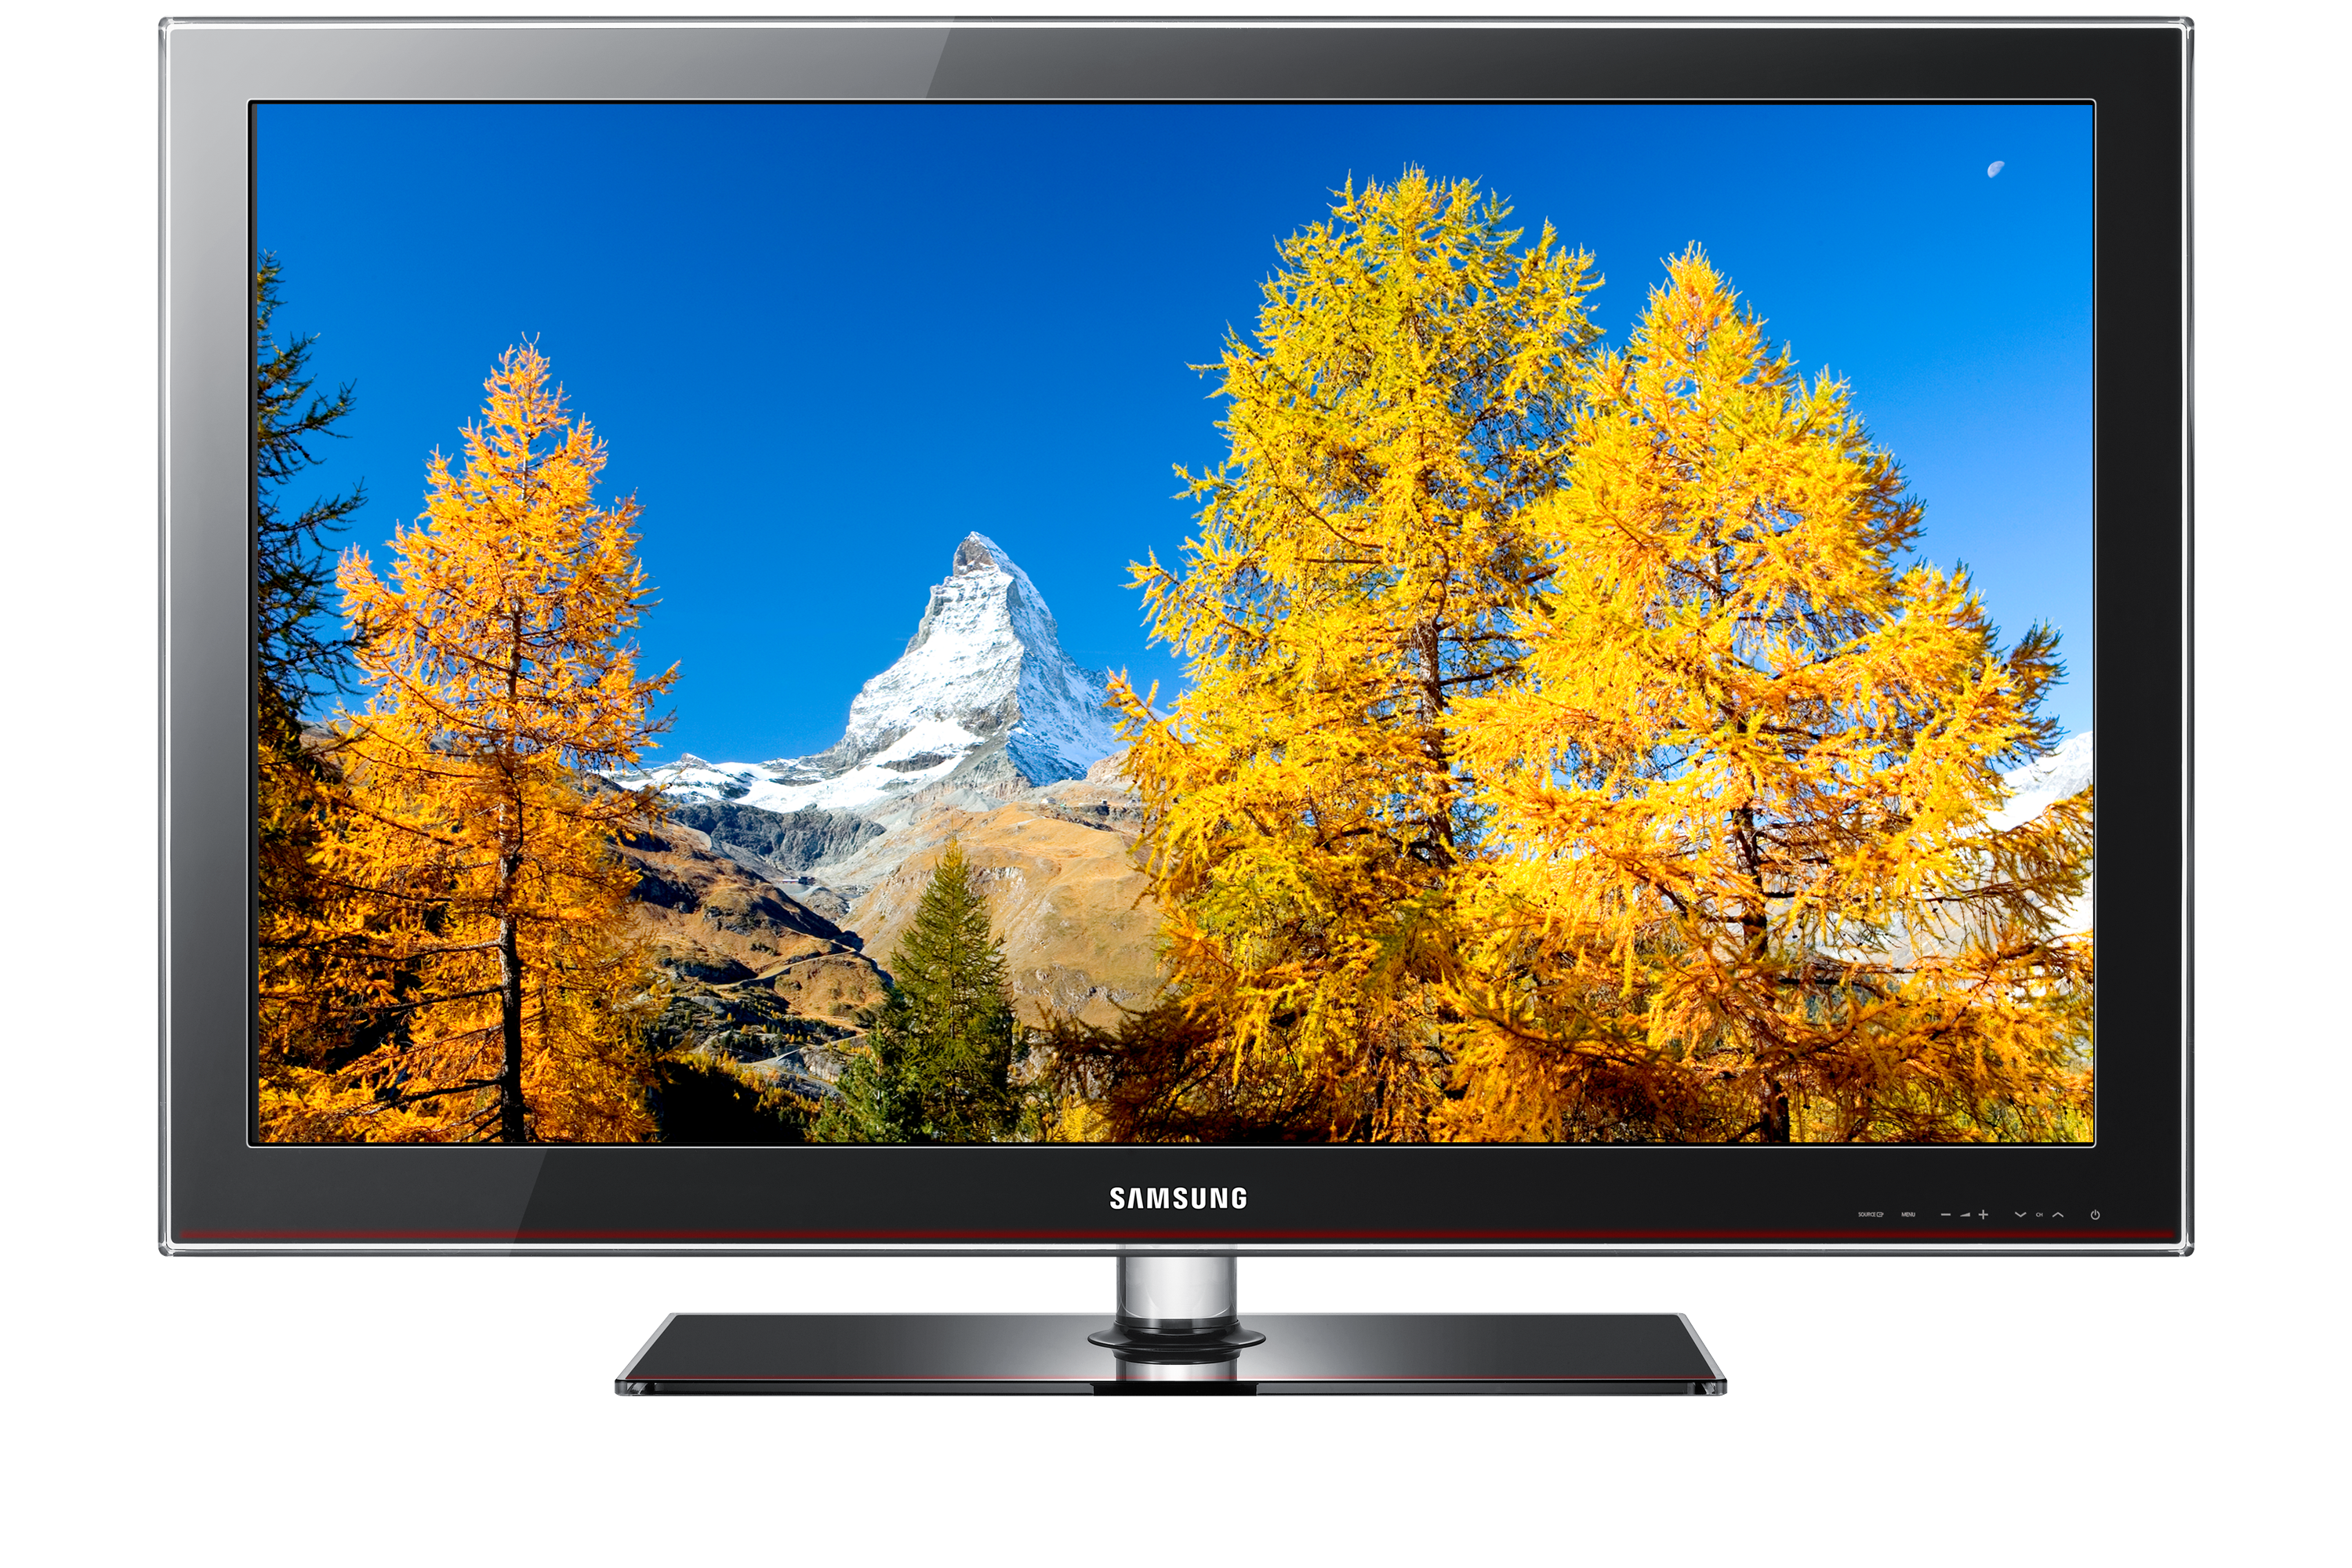 à¹à¸à¸£à¸à¸±à¸¨à¸à¹ LA32C630K1R LCD TV Series 6 32" 